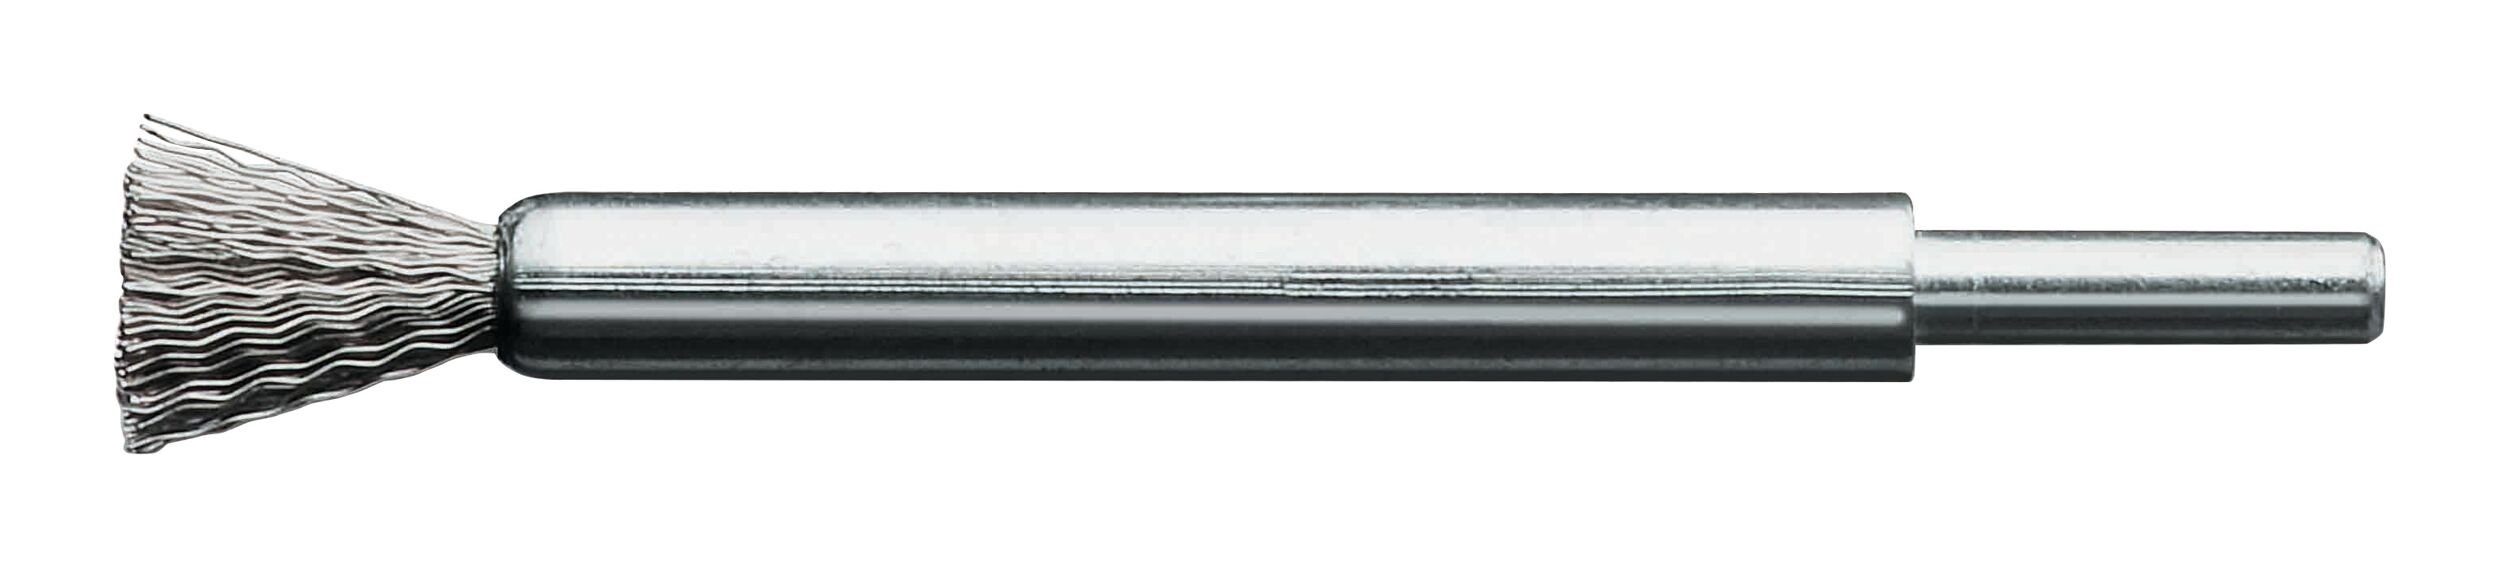 Lessmann Bürste, Pinselbürste Stahldraht gewellt 12 x 20/120 x 0,3 mm